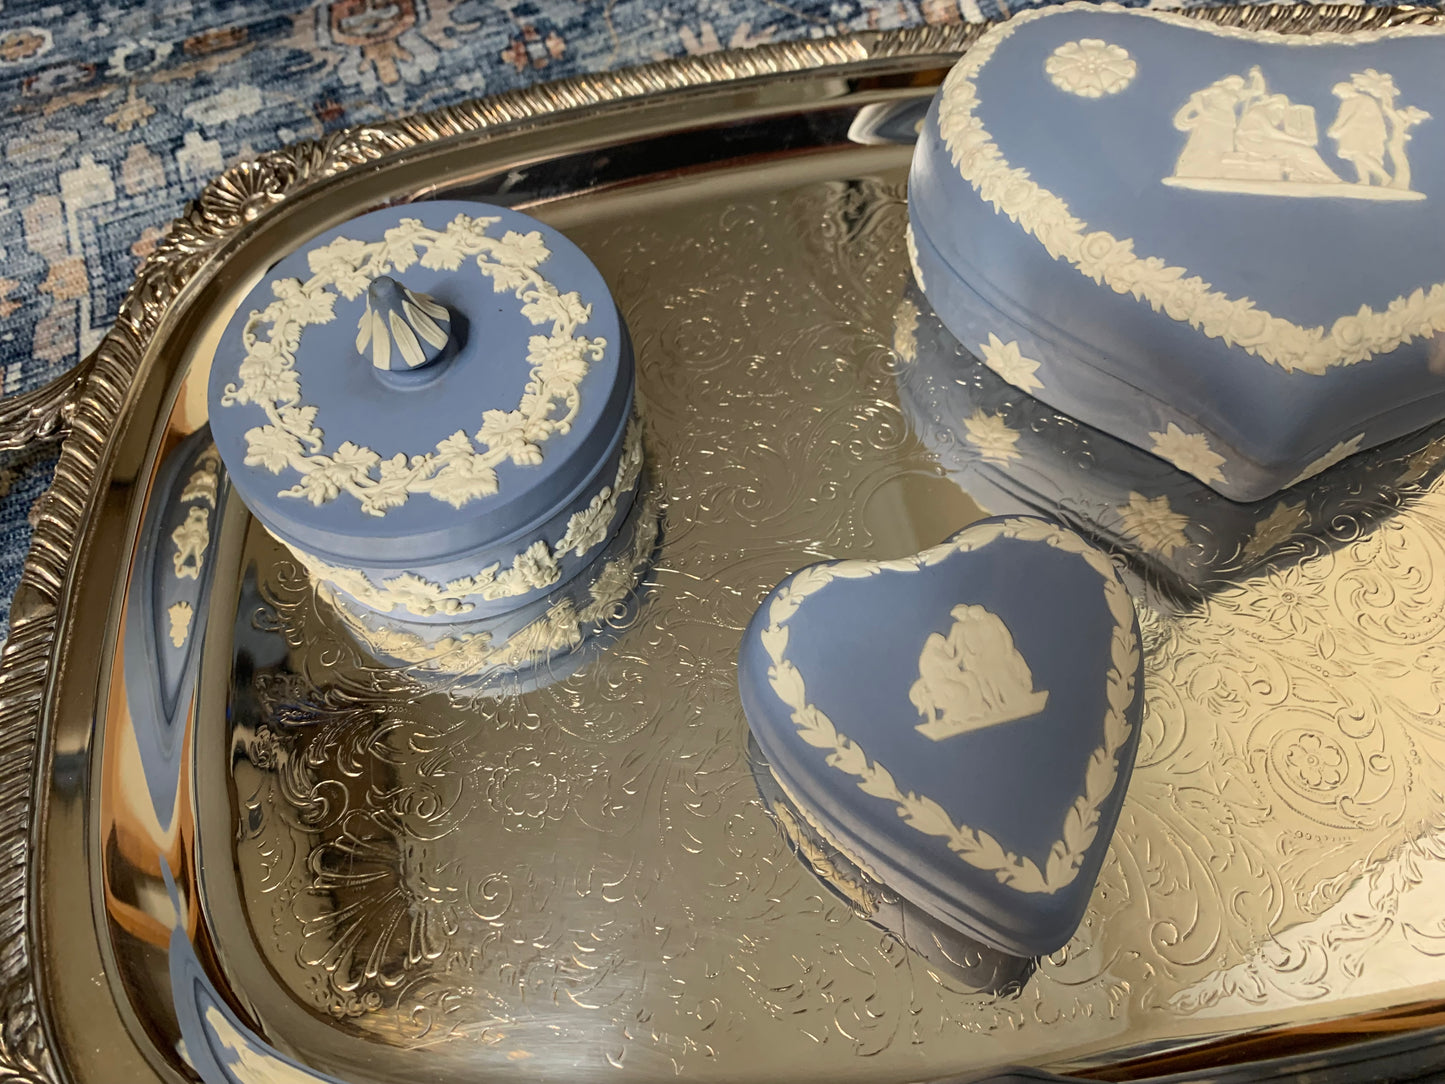 Beautiful Wedgwood Jasperware blue and white round trinket box!